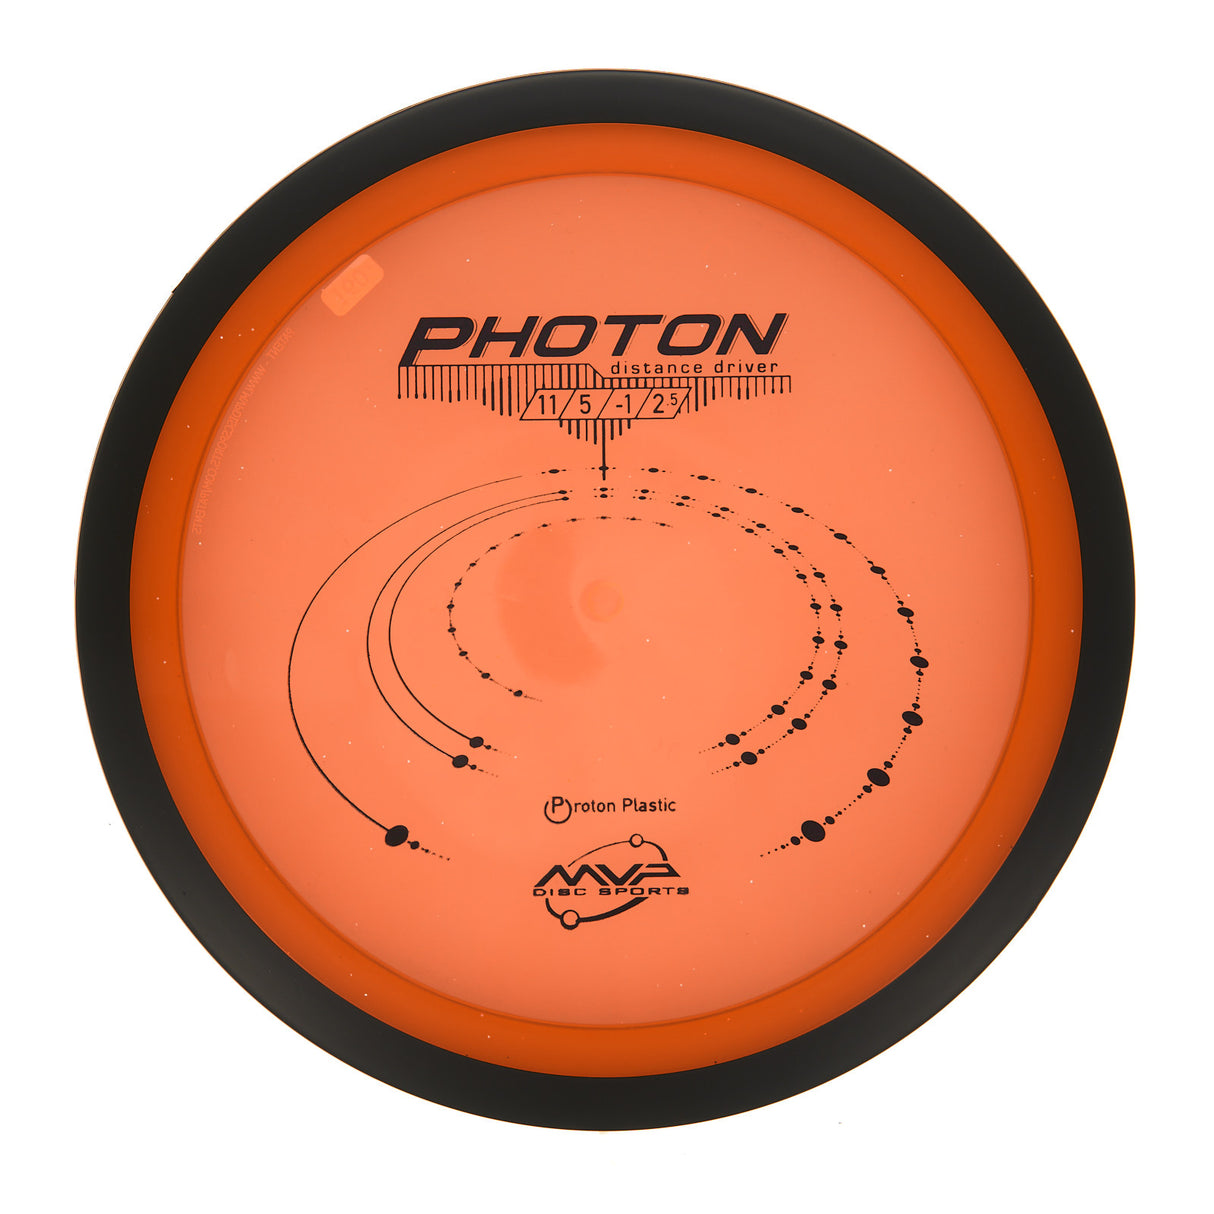 MVP Photon - Proton 159g | Style 0001